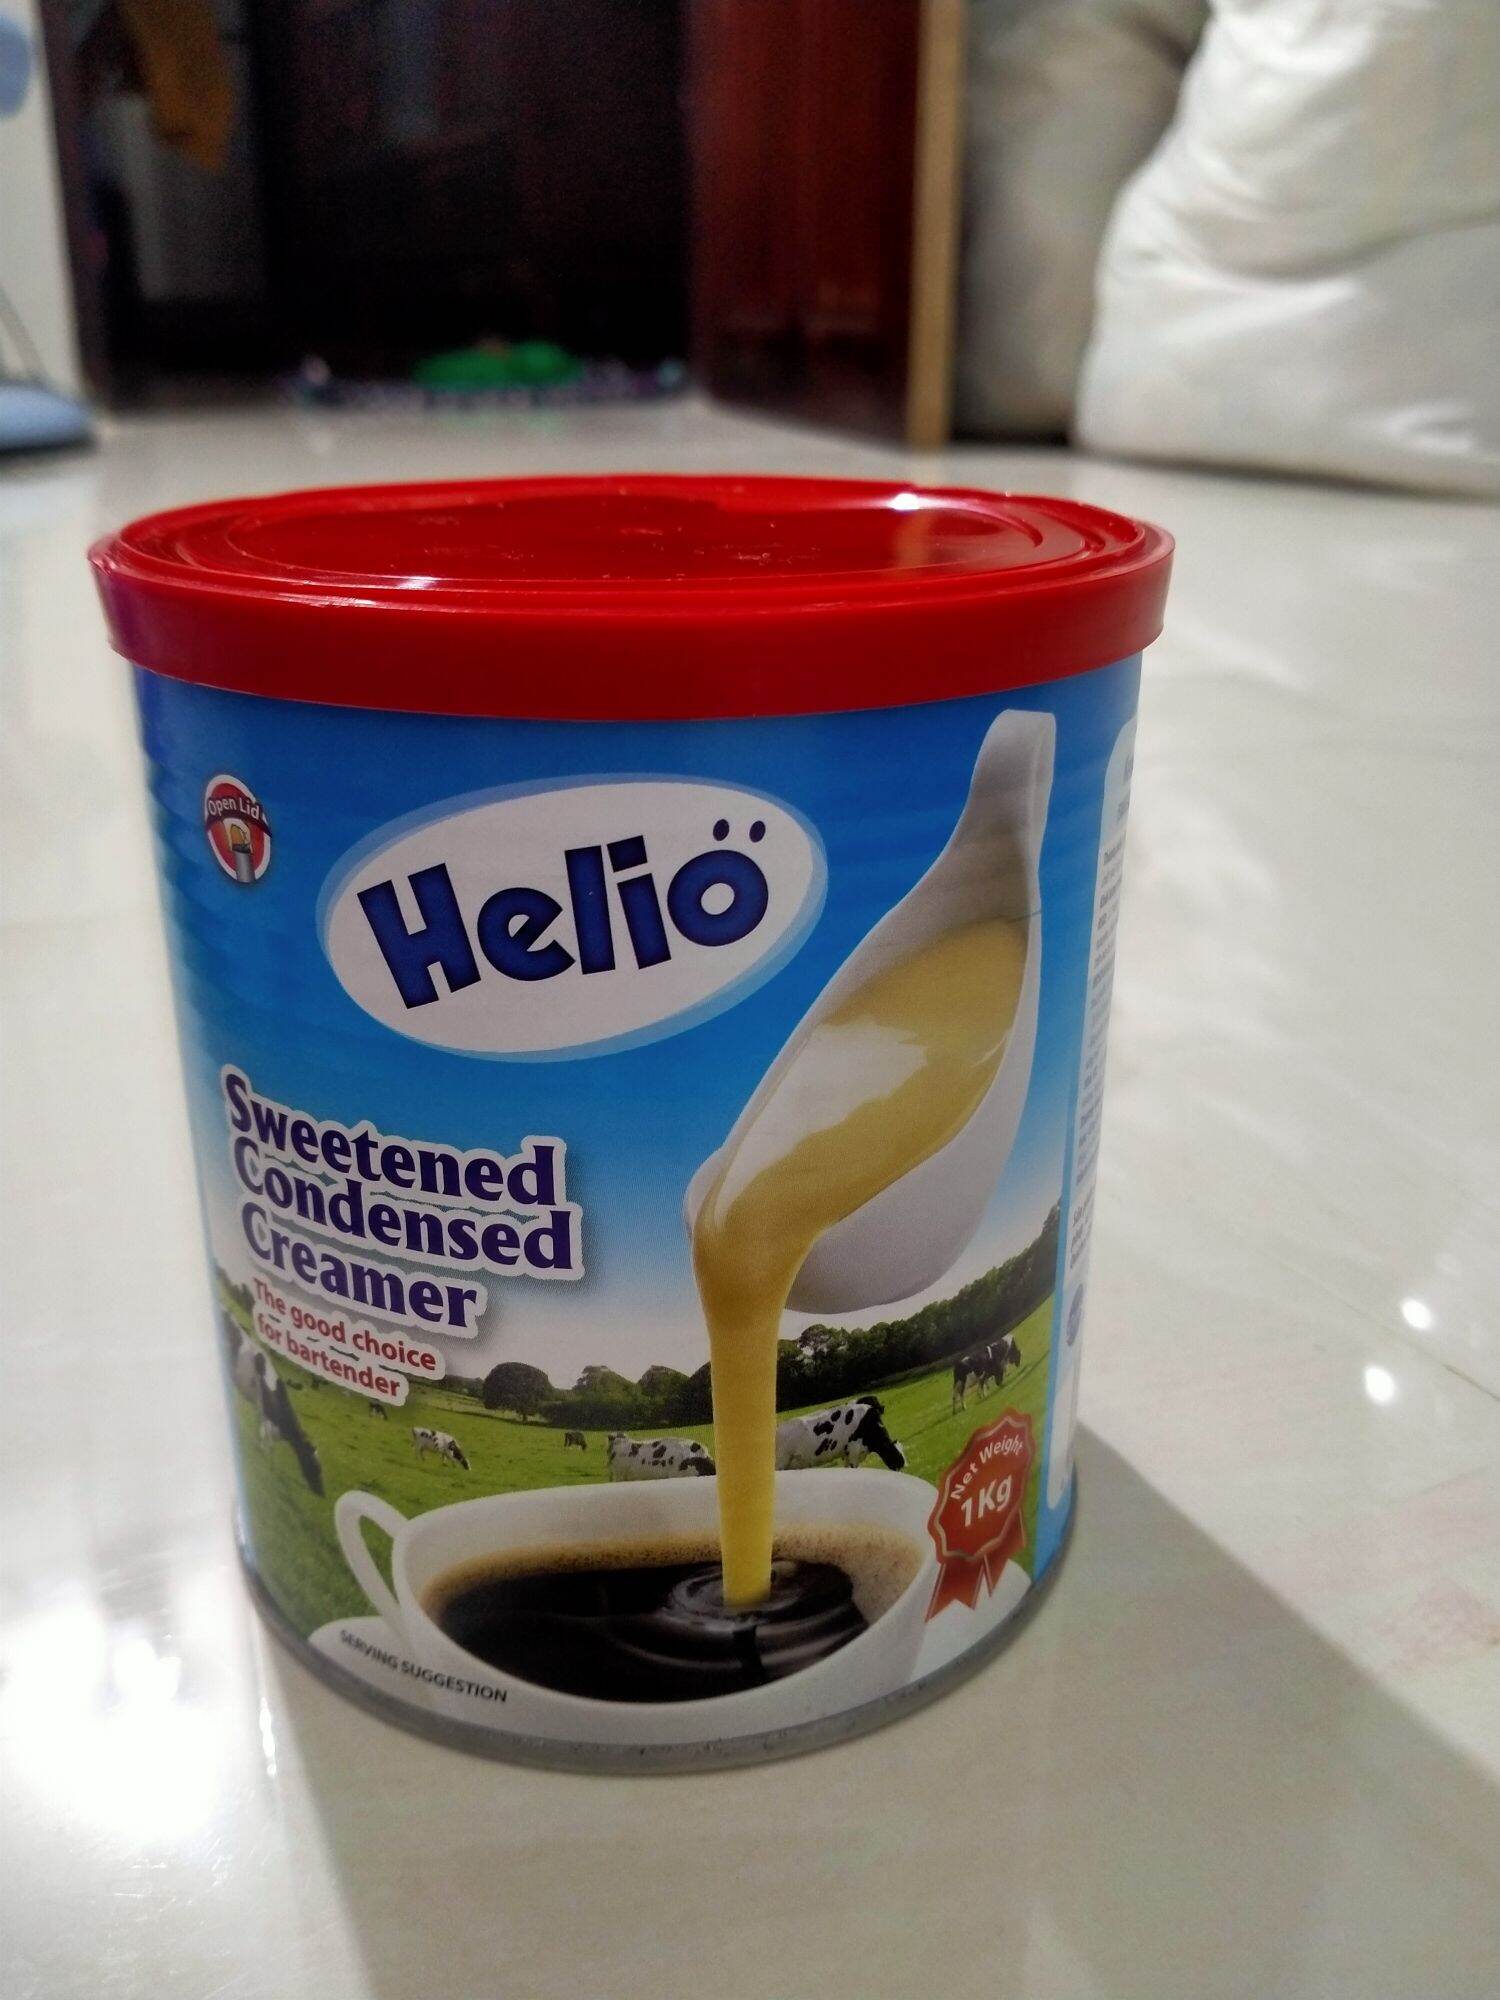 Sữa đặc 1kg có đường Helio sản xuất theo tiêu chuẩn Đức Sweetened Condensed Creamer